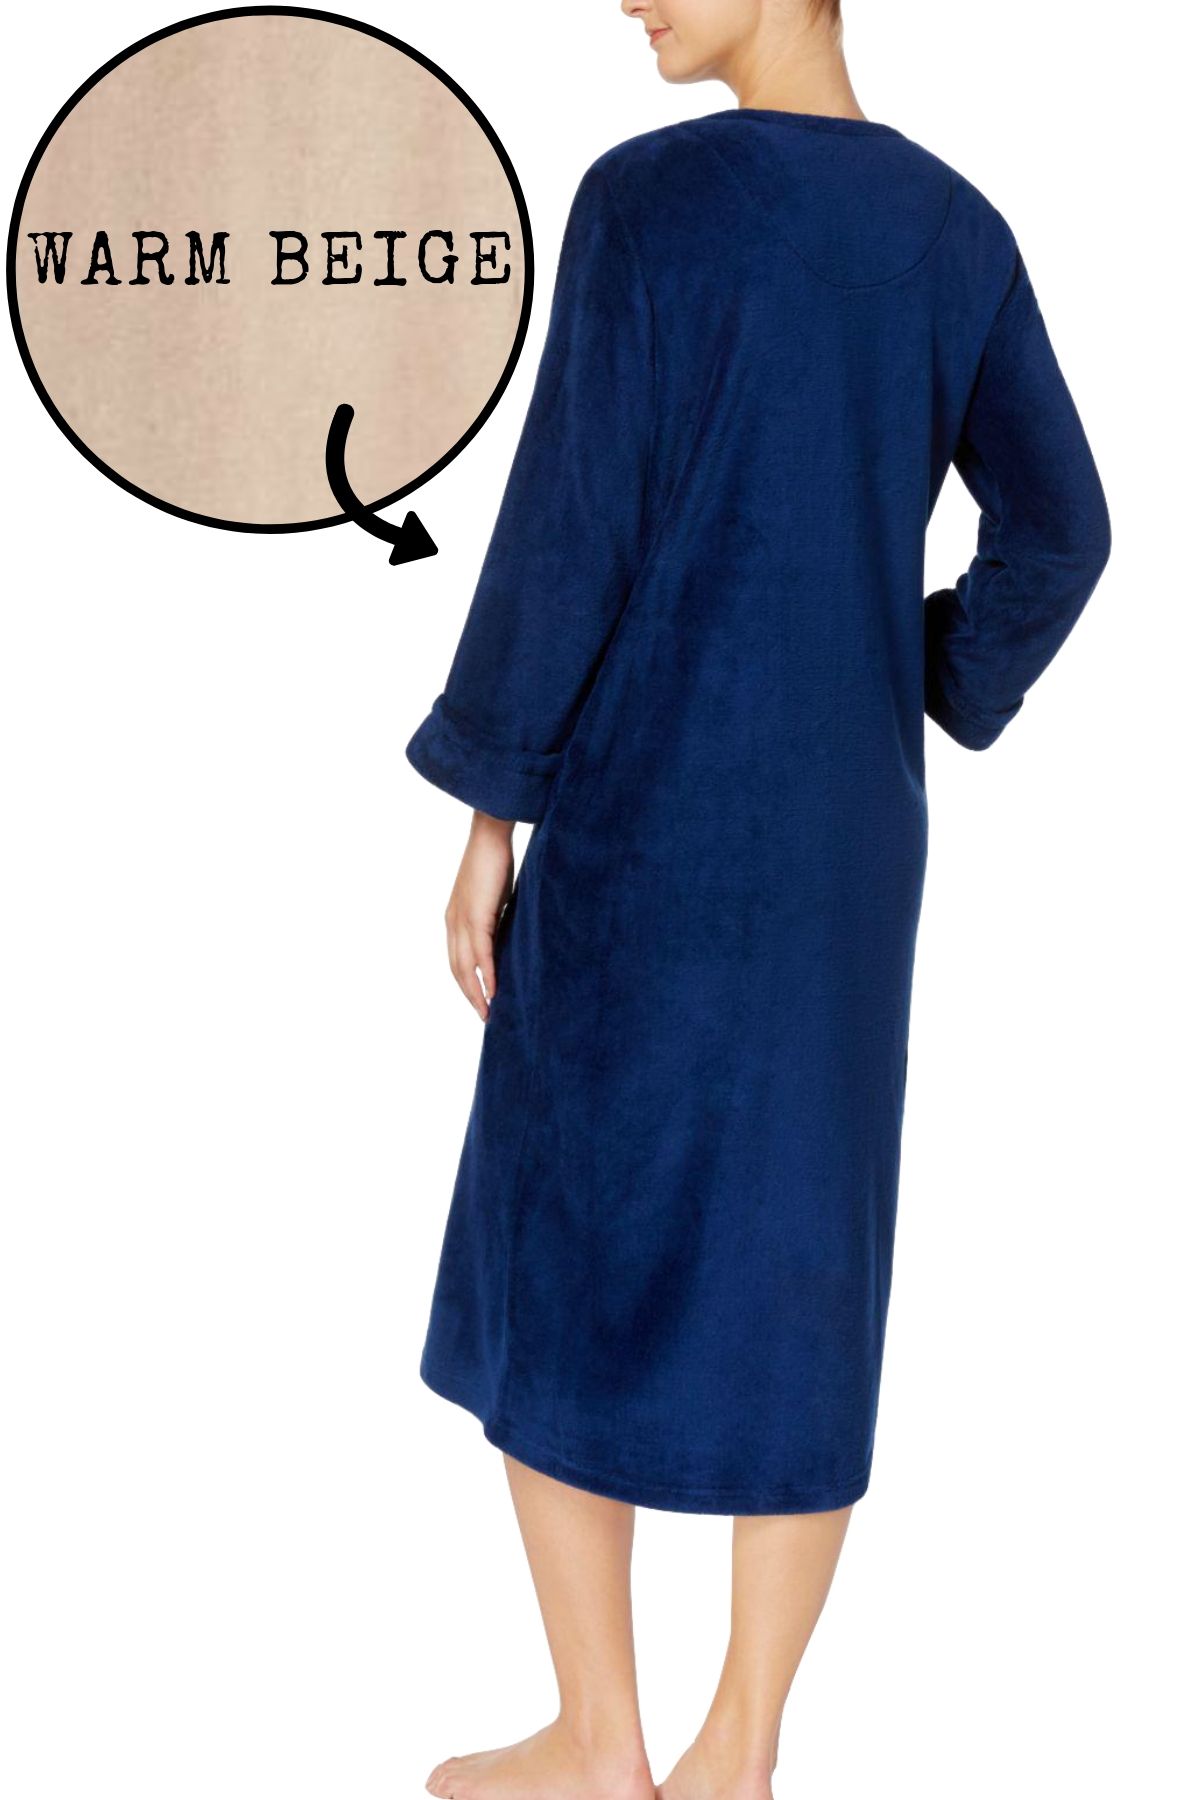 Miss Elaine Warm-Beige Embroidered Fleece Robe